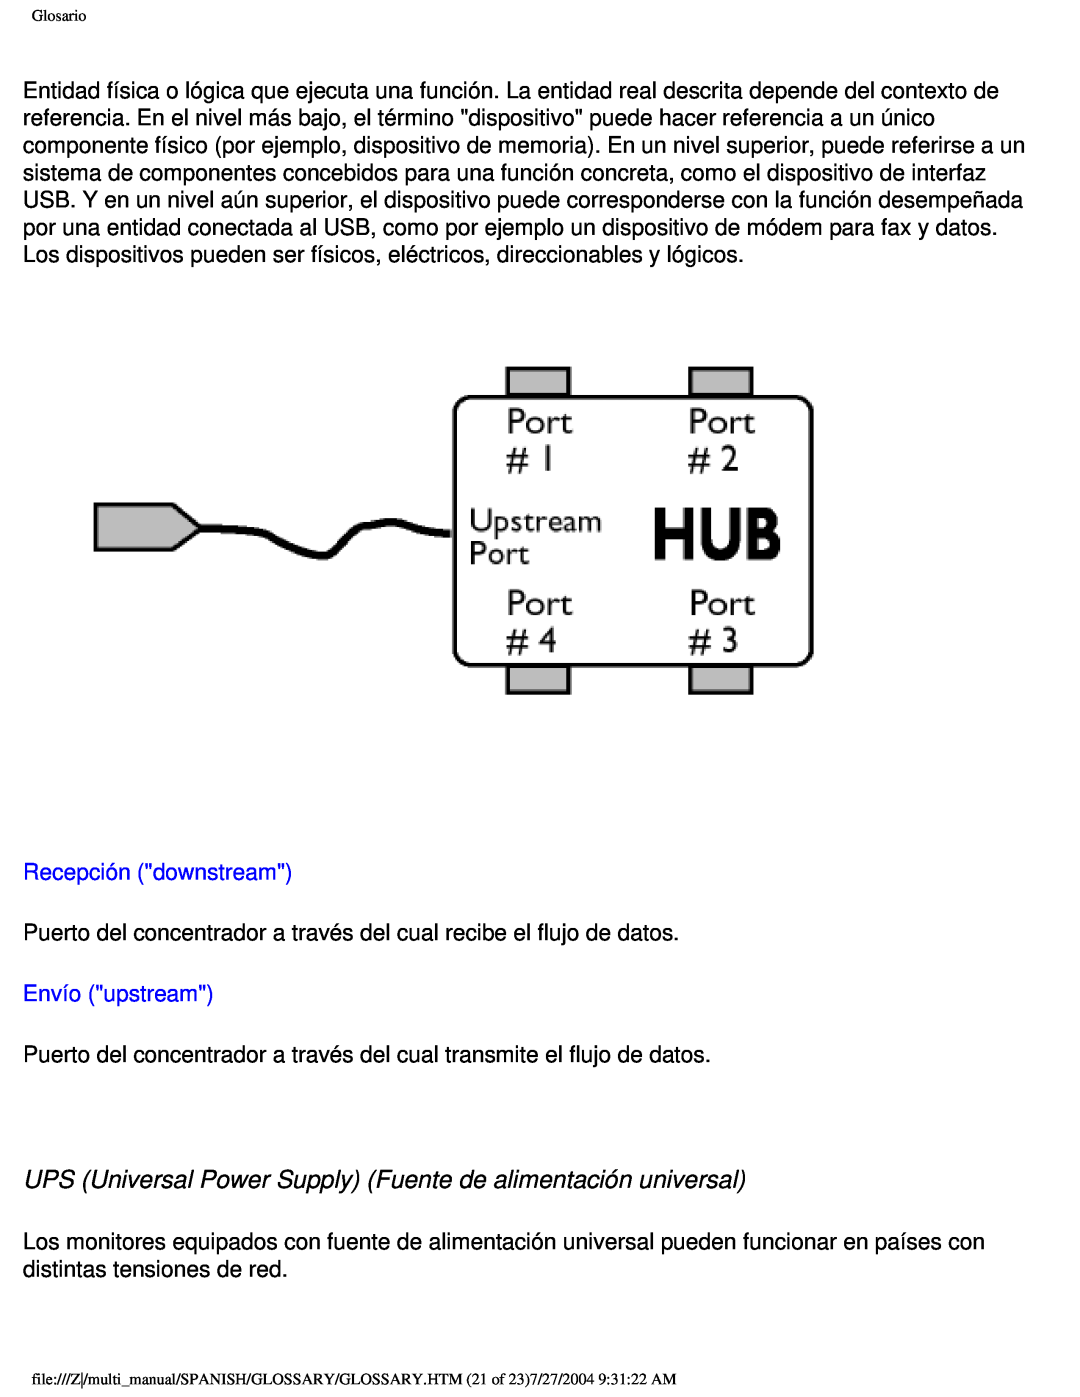 Philips 107B user manual UPS Universal Power Supply Fuente de alimentación universal, Recepción downstream, Envío upstream 